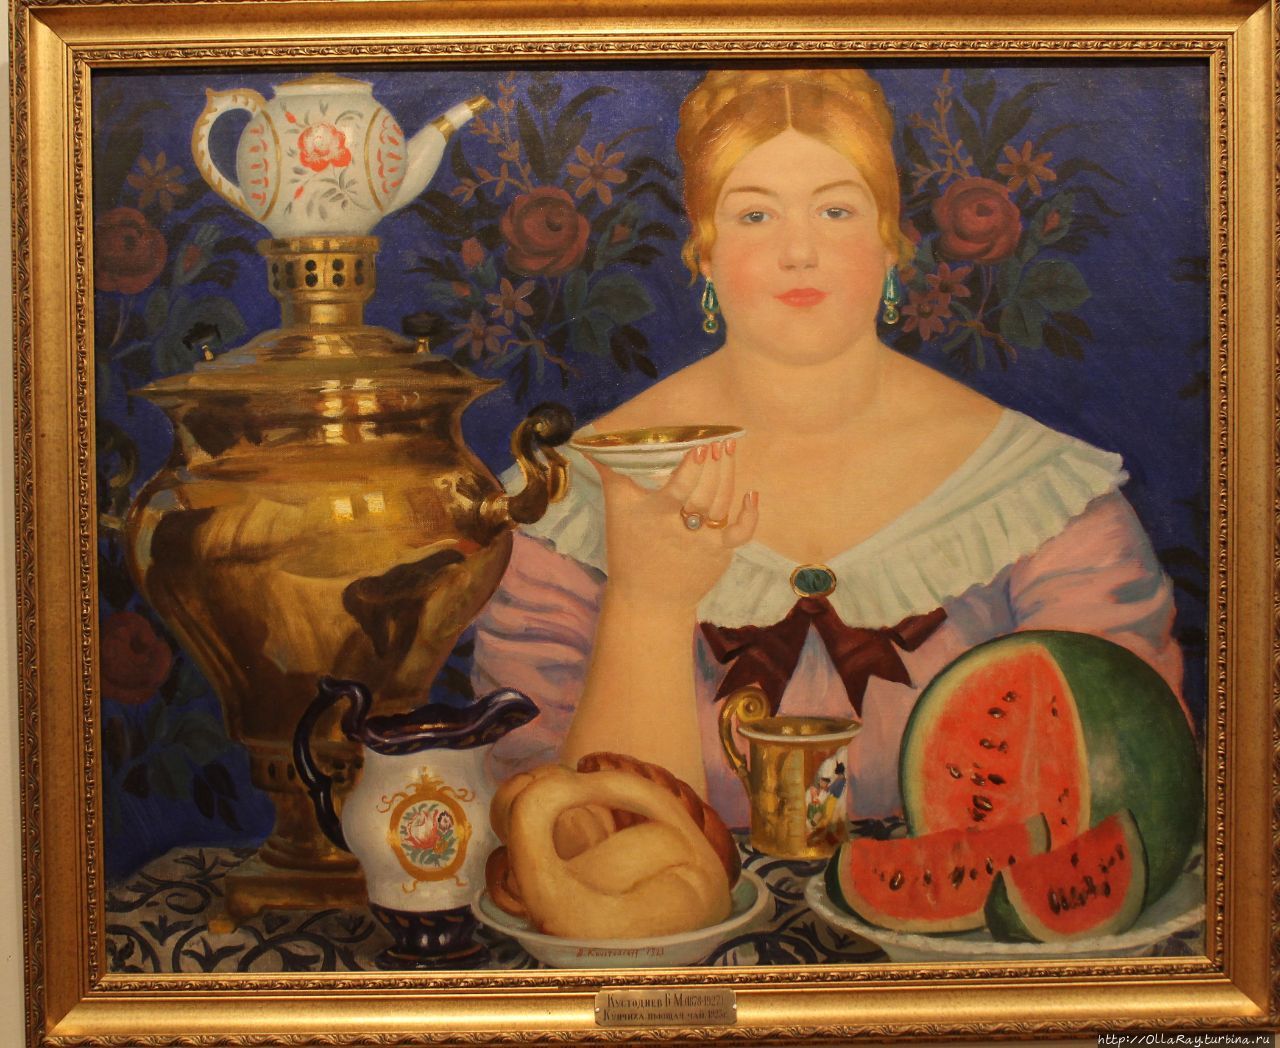 Купчиха, пьющая чай. Б.М.Кустодиев, 1923 г. Нижний Новгород, Россия